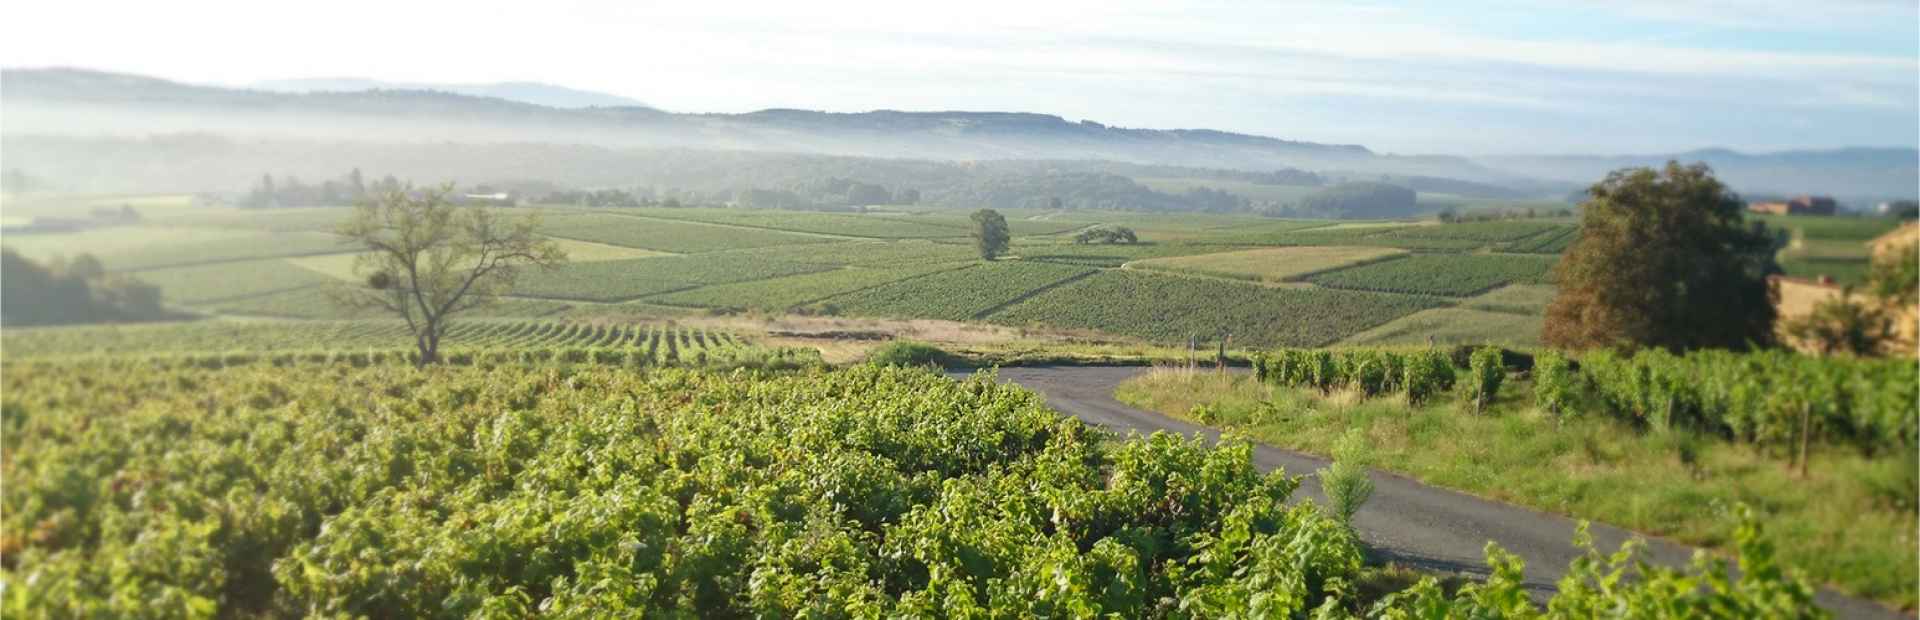 Winesof the appellation Juliénas